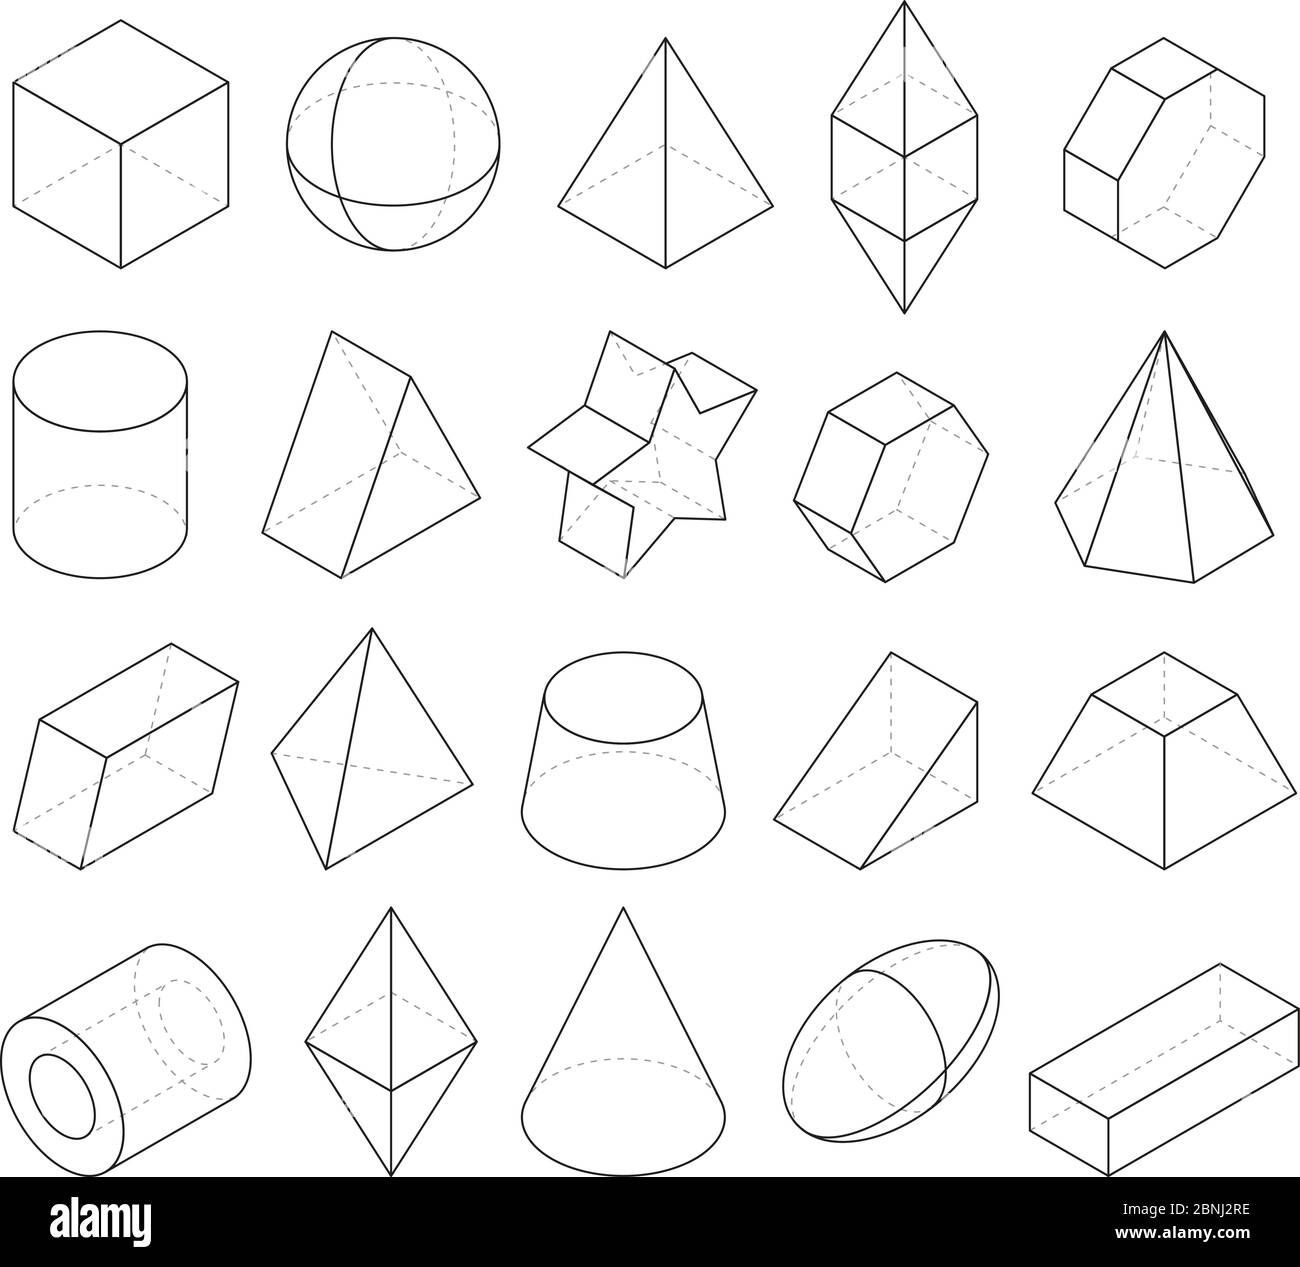 Illustrazioni monoline. Fotogrammi di forme geometriche diverse Illustrazione Vettoriale